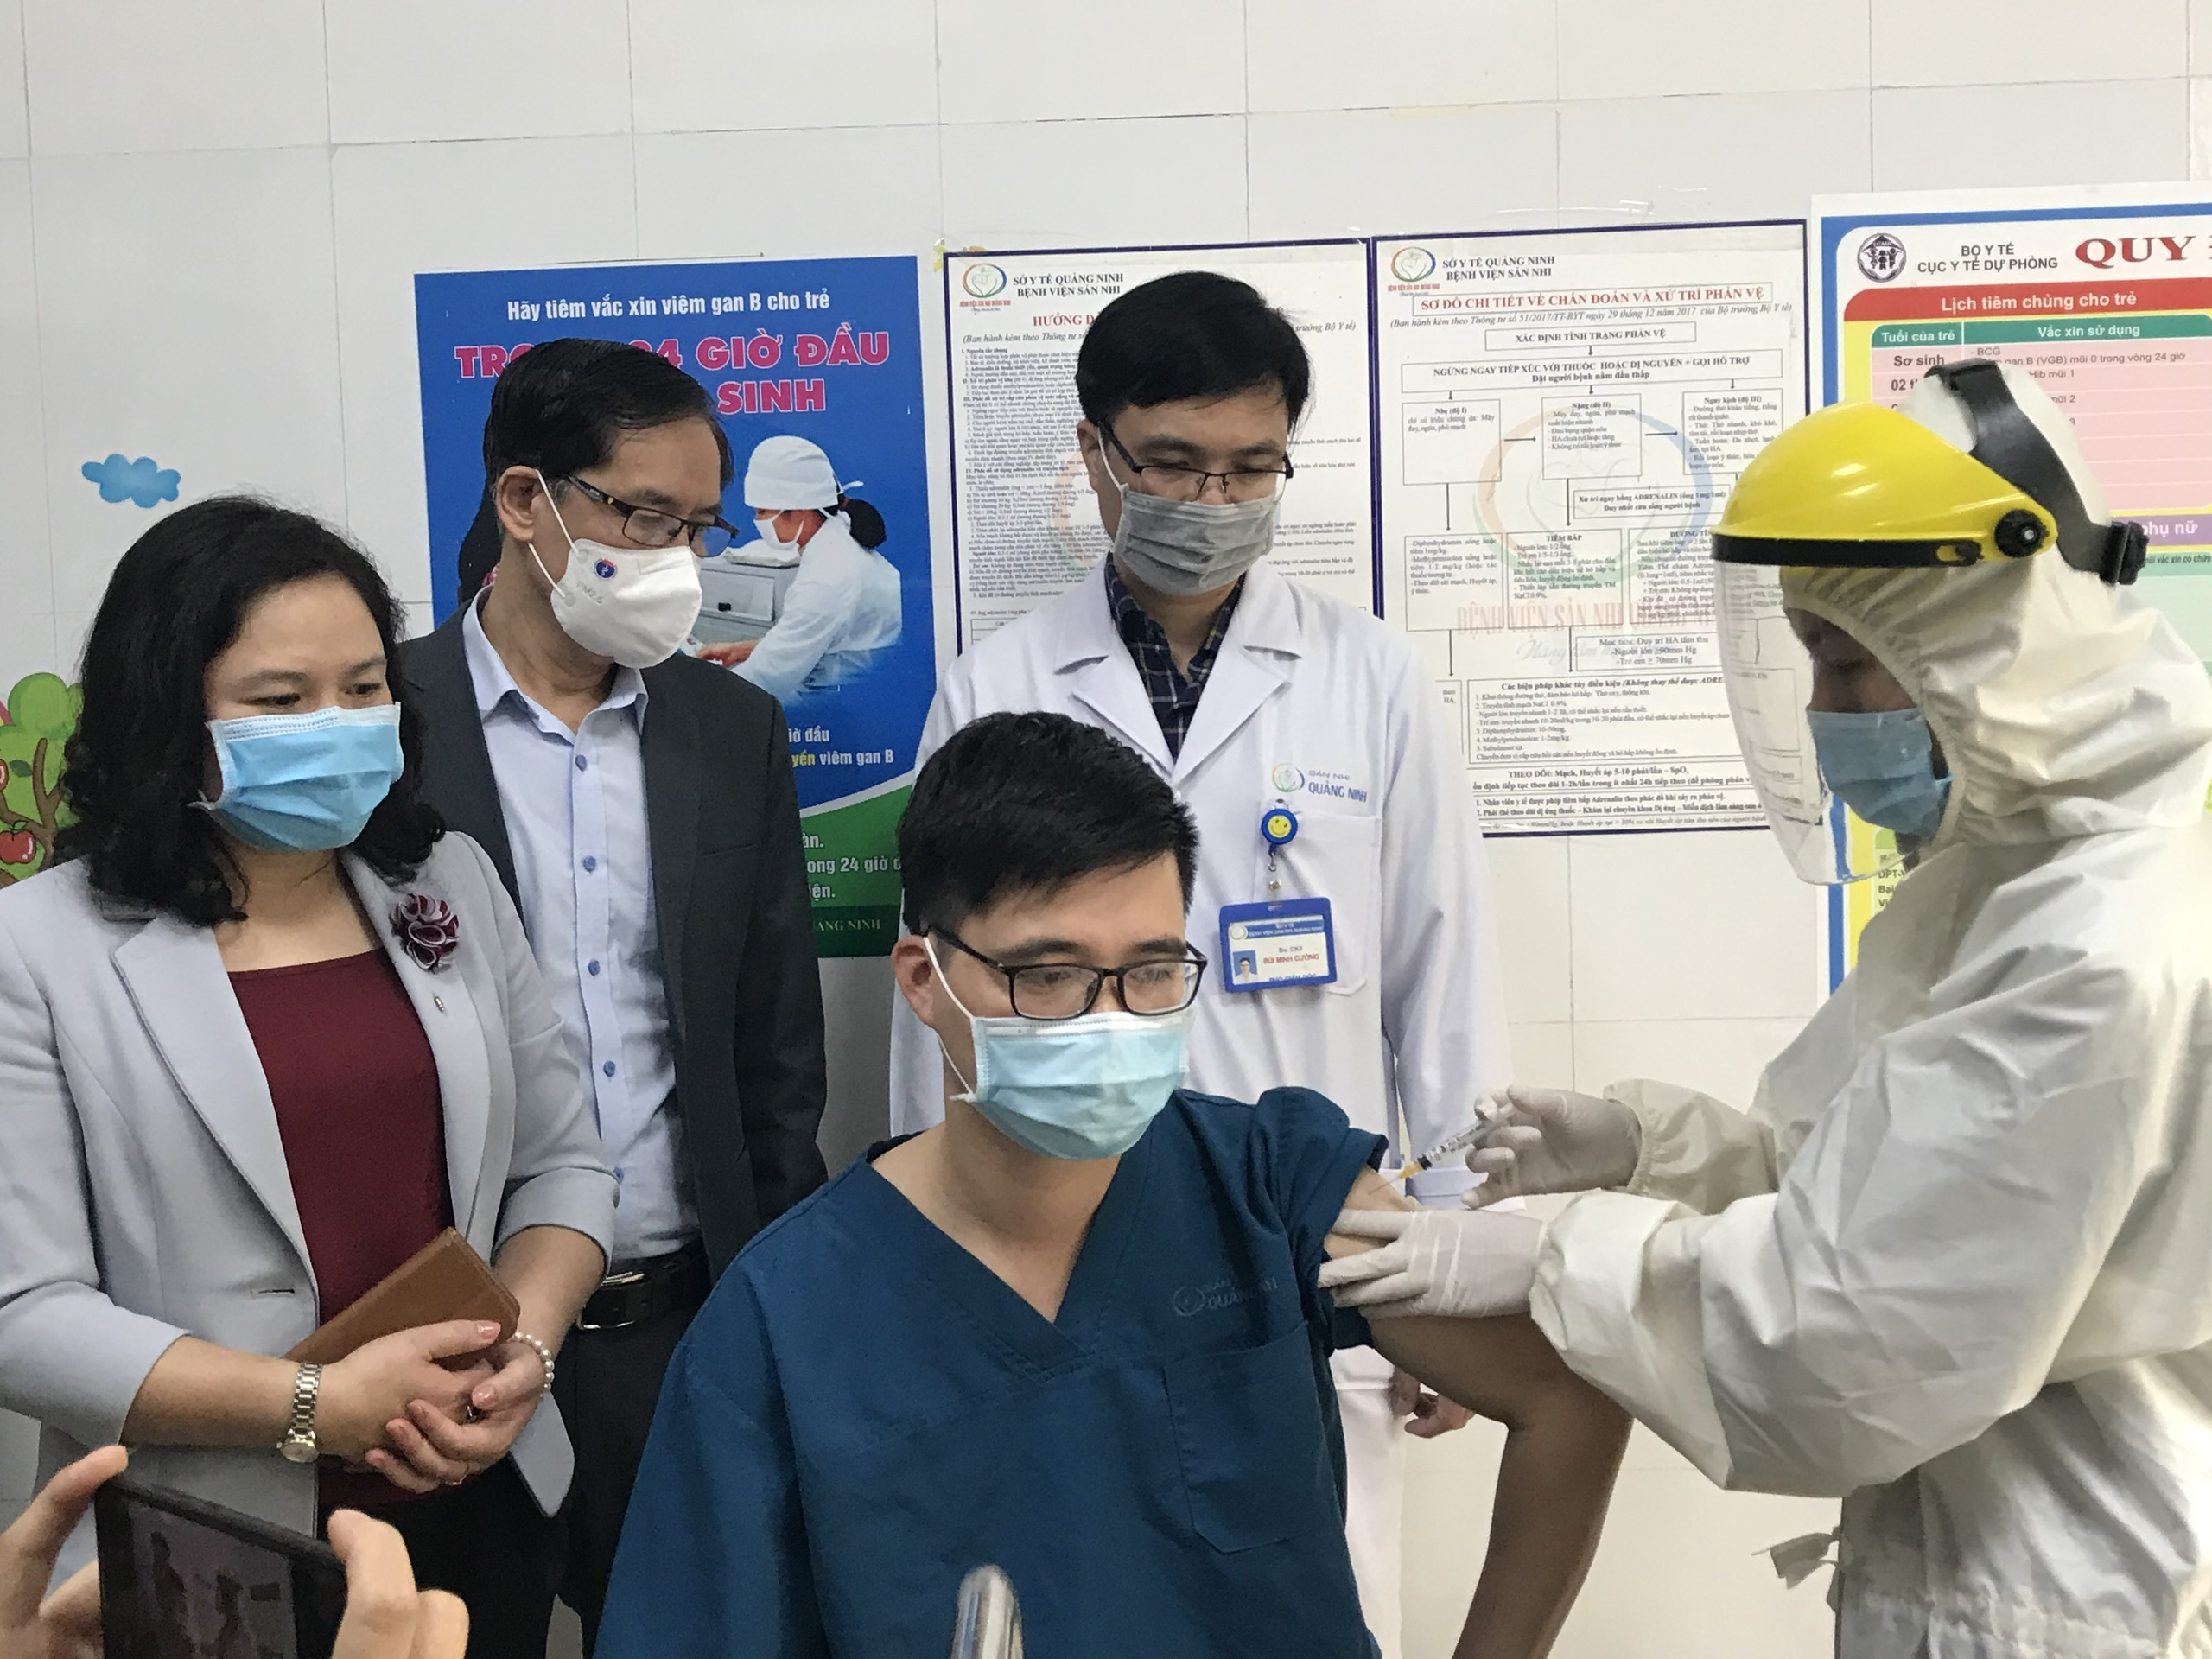 Gần 40.000 người đã tiêm vắc xin COVID-19; Bộ Y tế kiểm tra công tác phòng chống dịch tại Hà Nội - Ảnh 1.